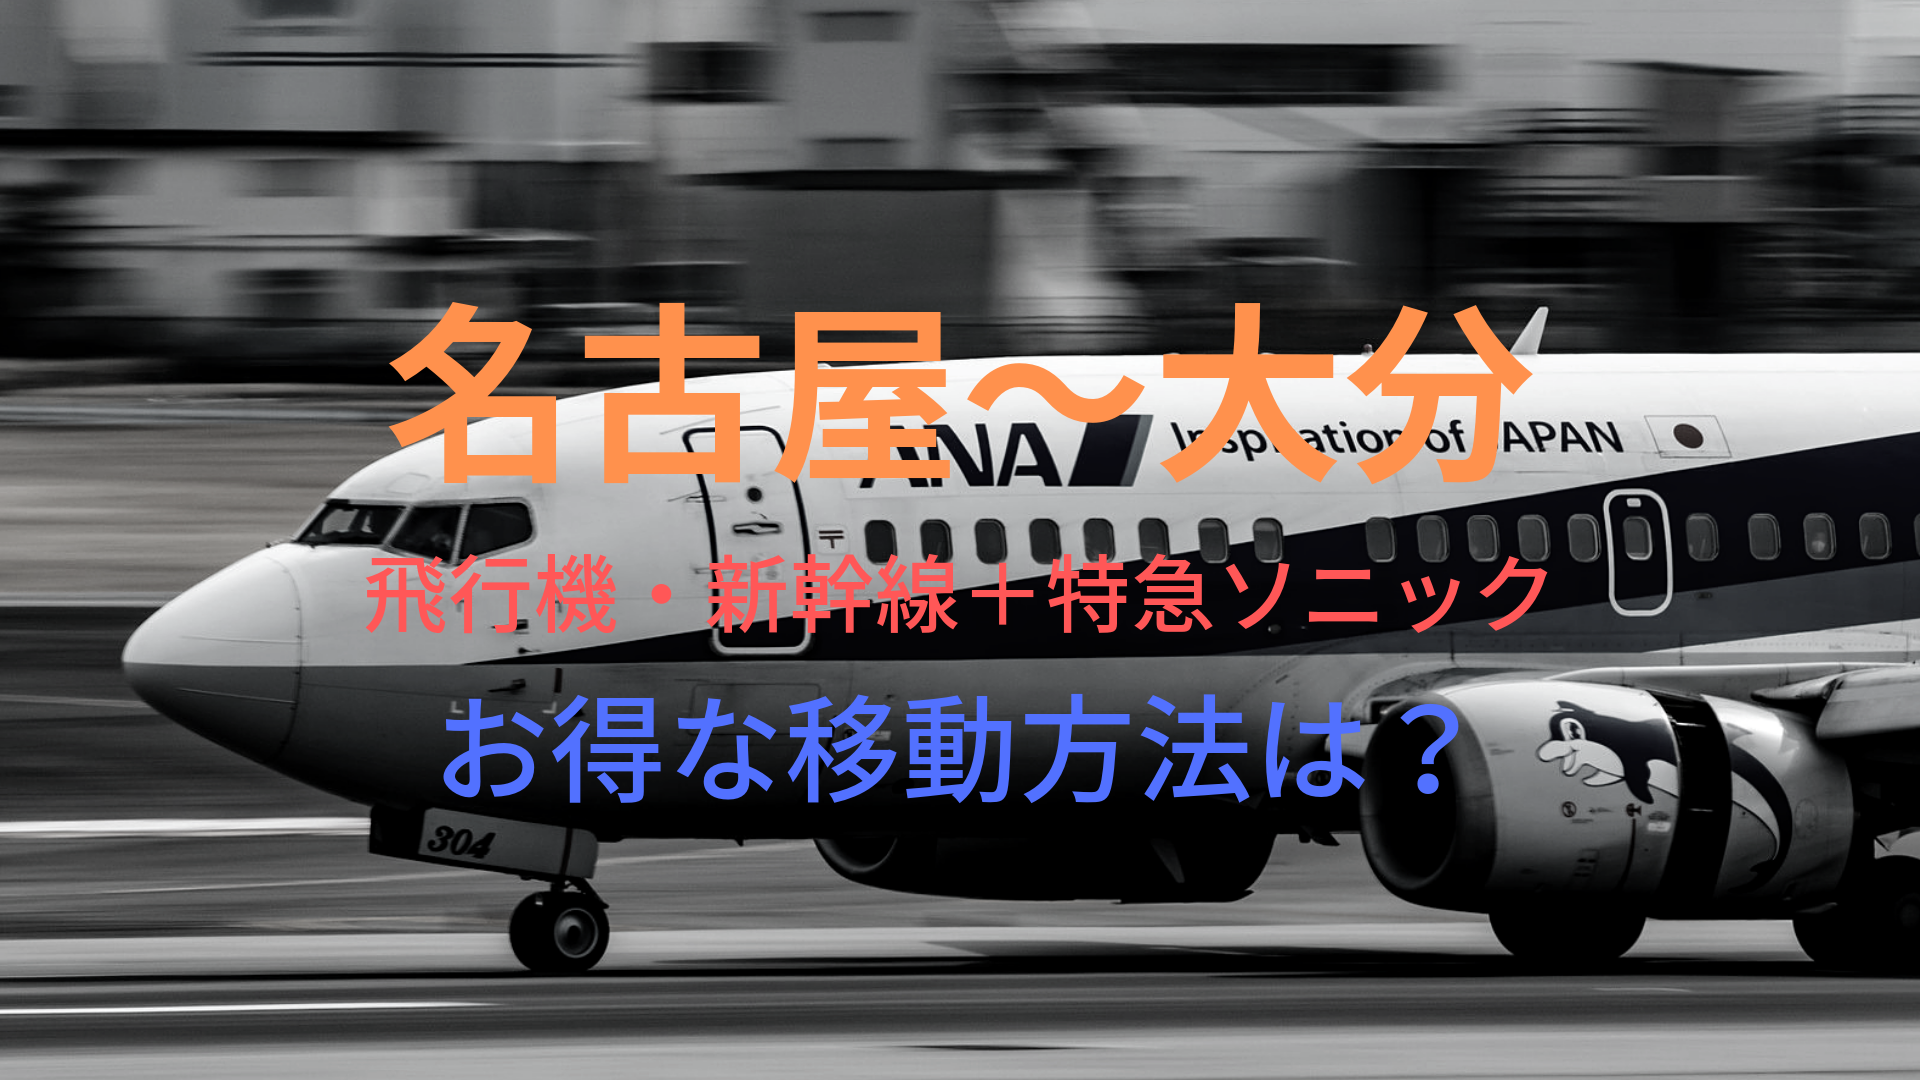 名古屋 大分 円 格安で移動する方法は 飛行機 新幹線 特急ソニックをそれぞれ比較 ばしたく交通